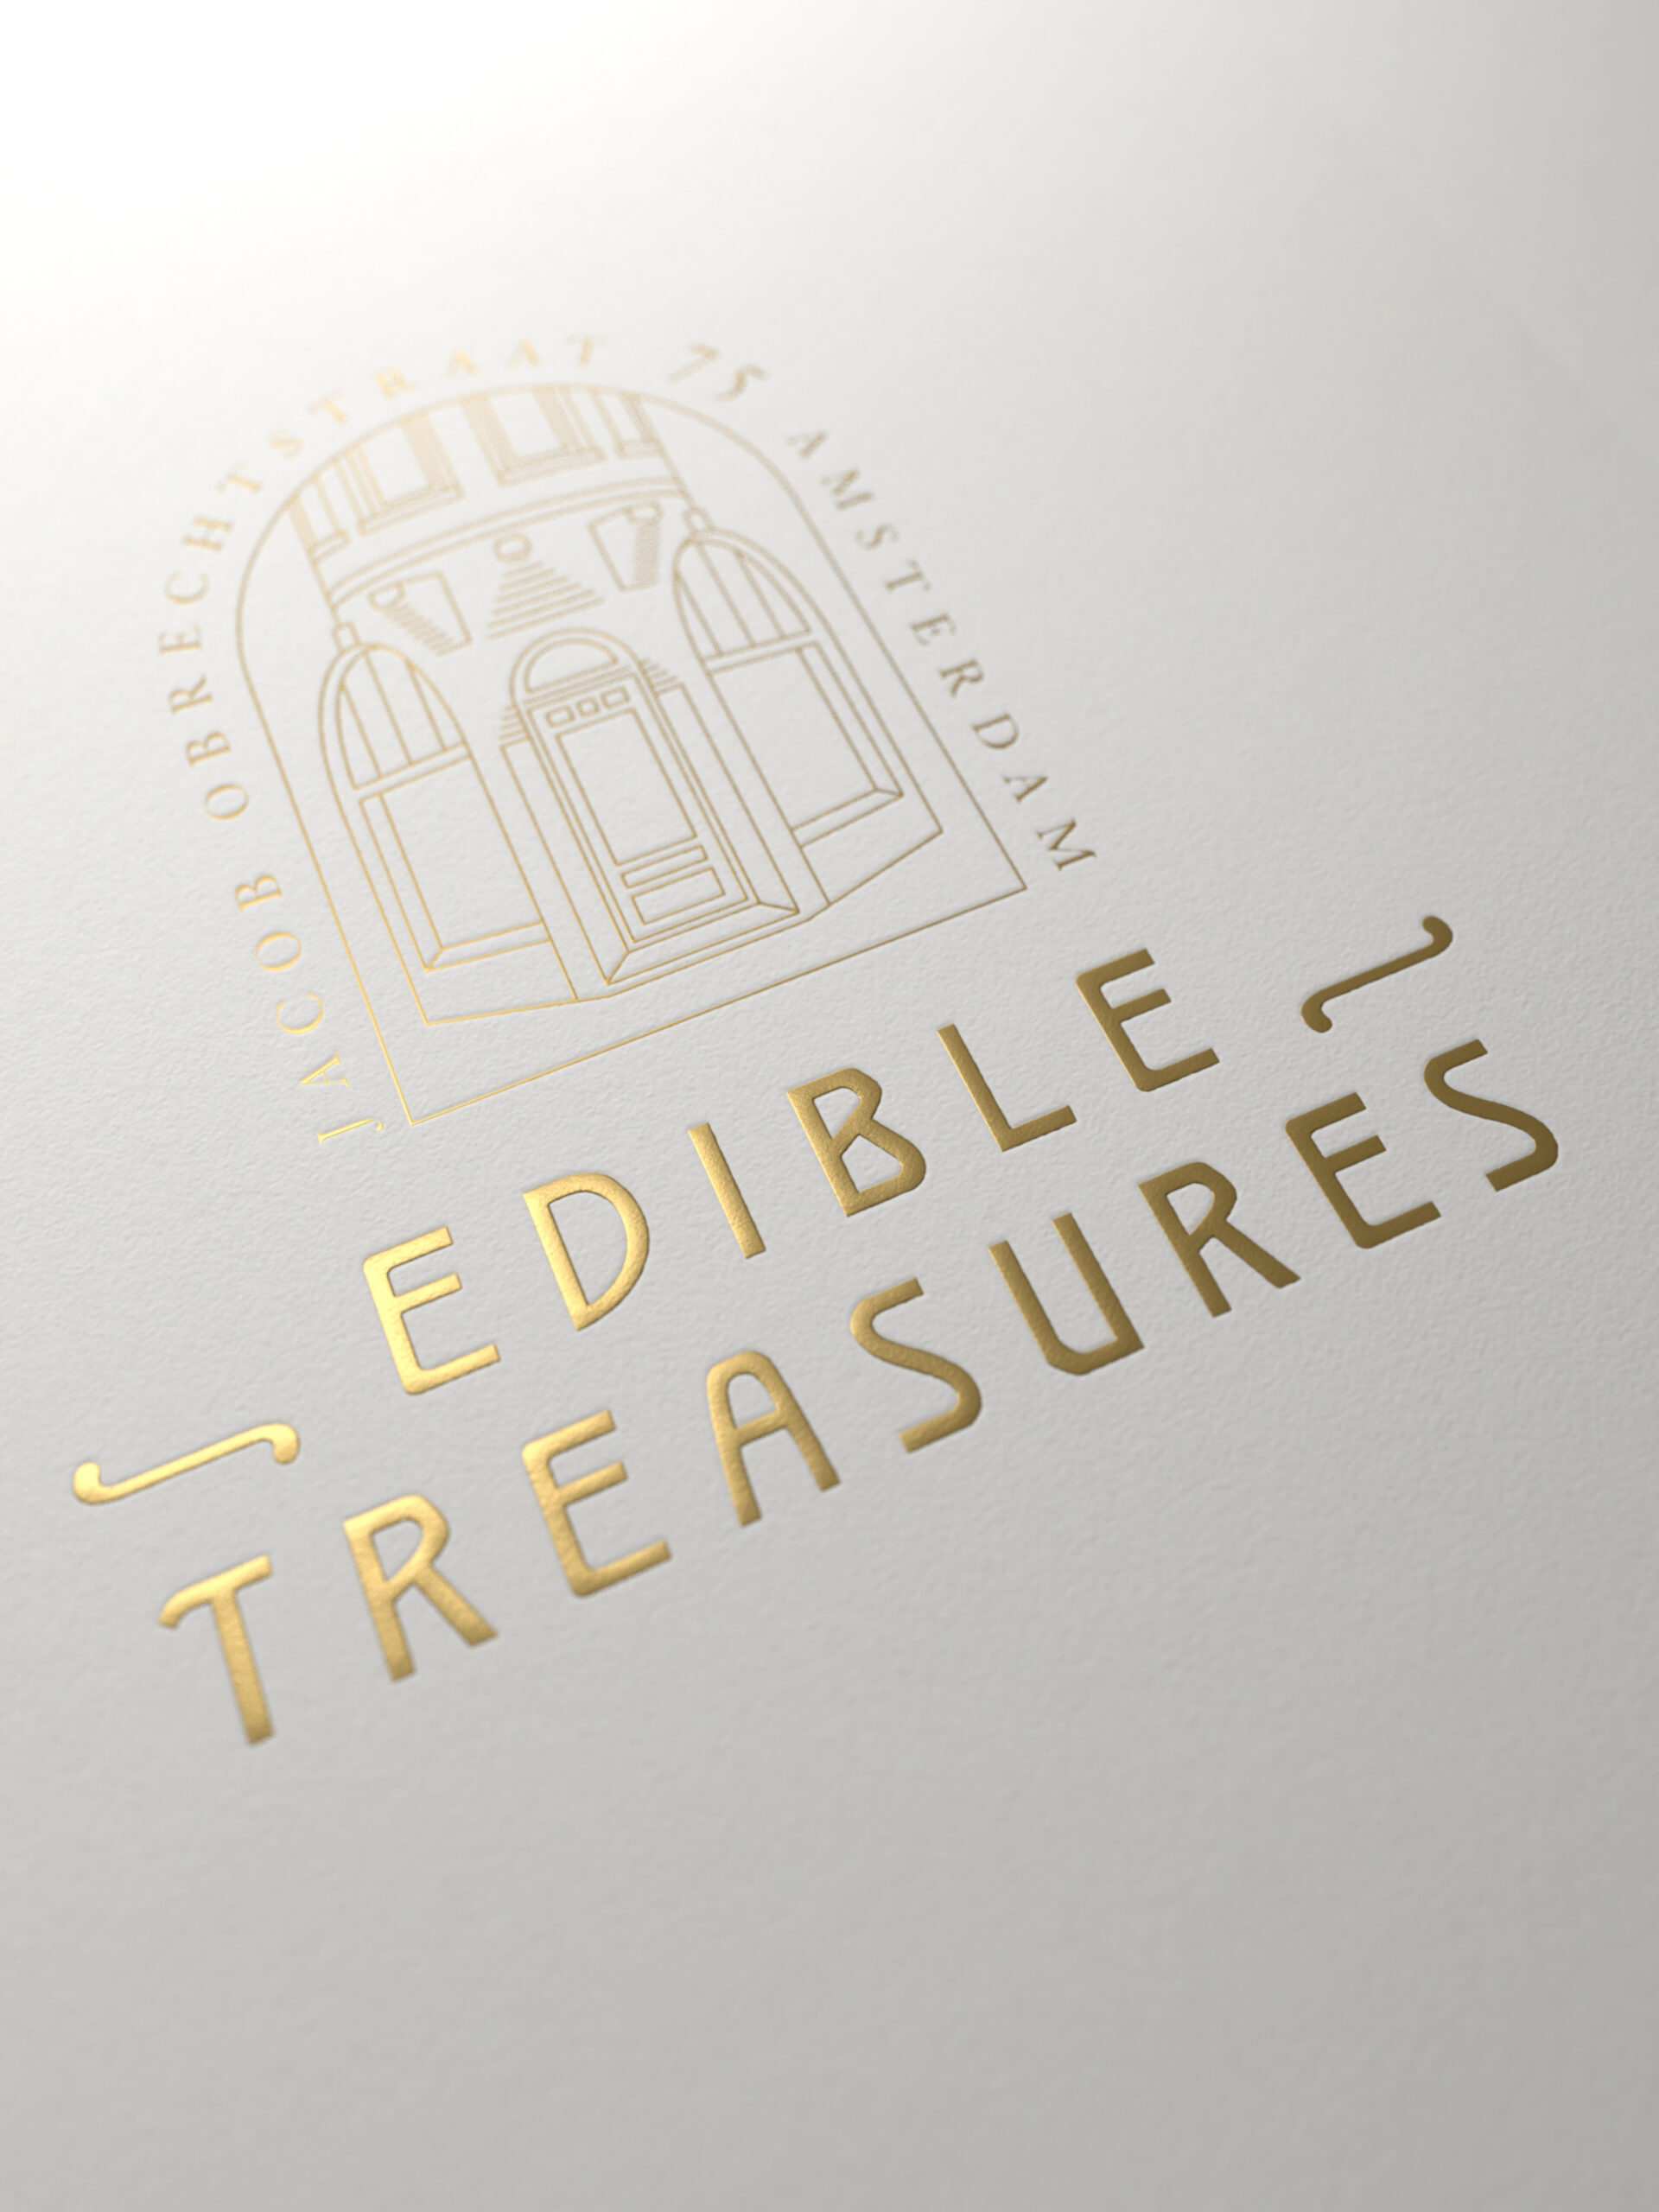 Edible treasures logo thumbnail image